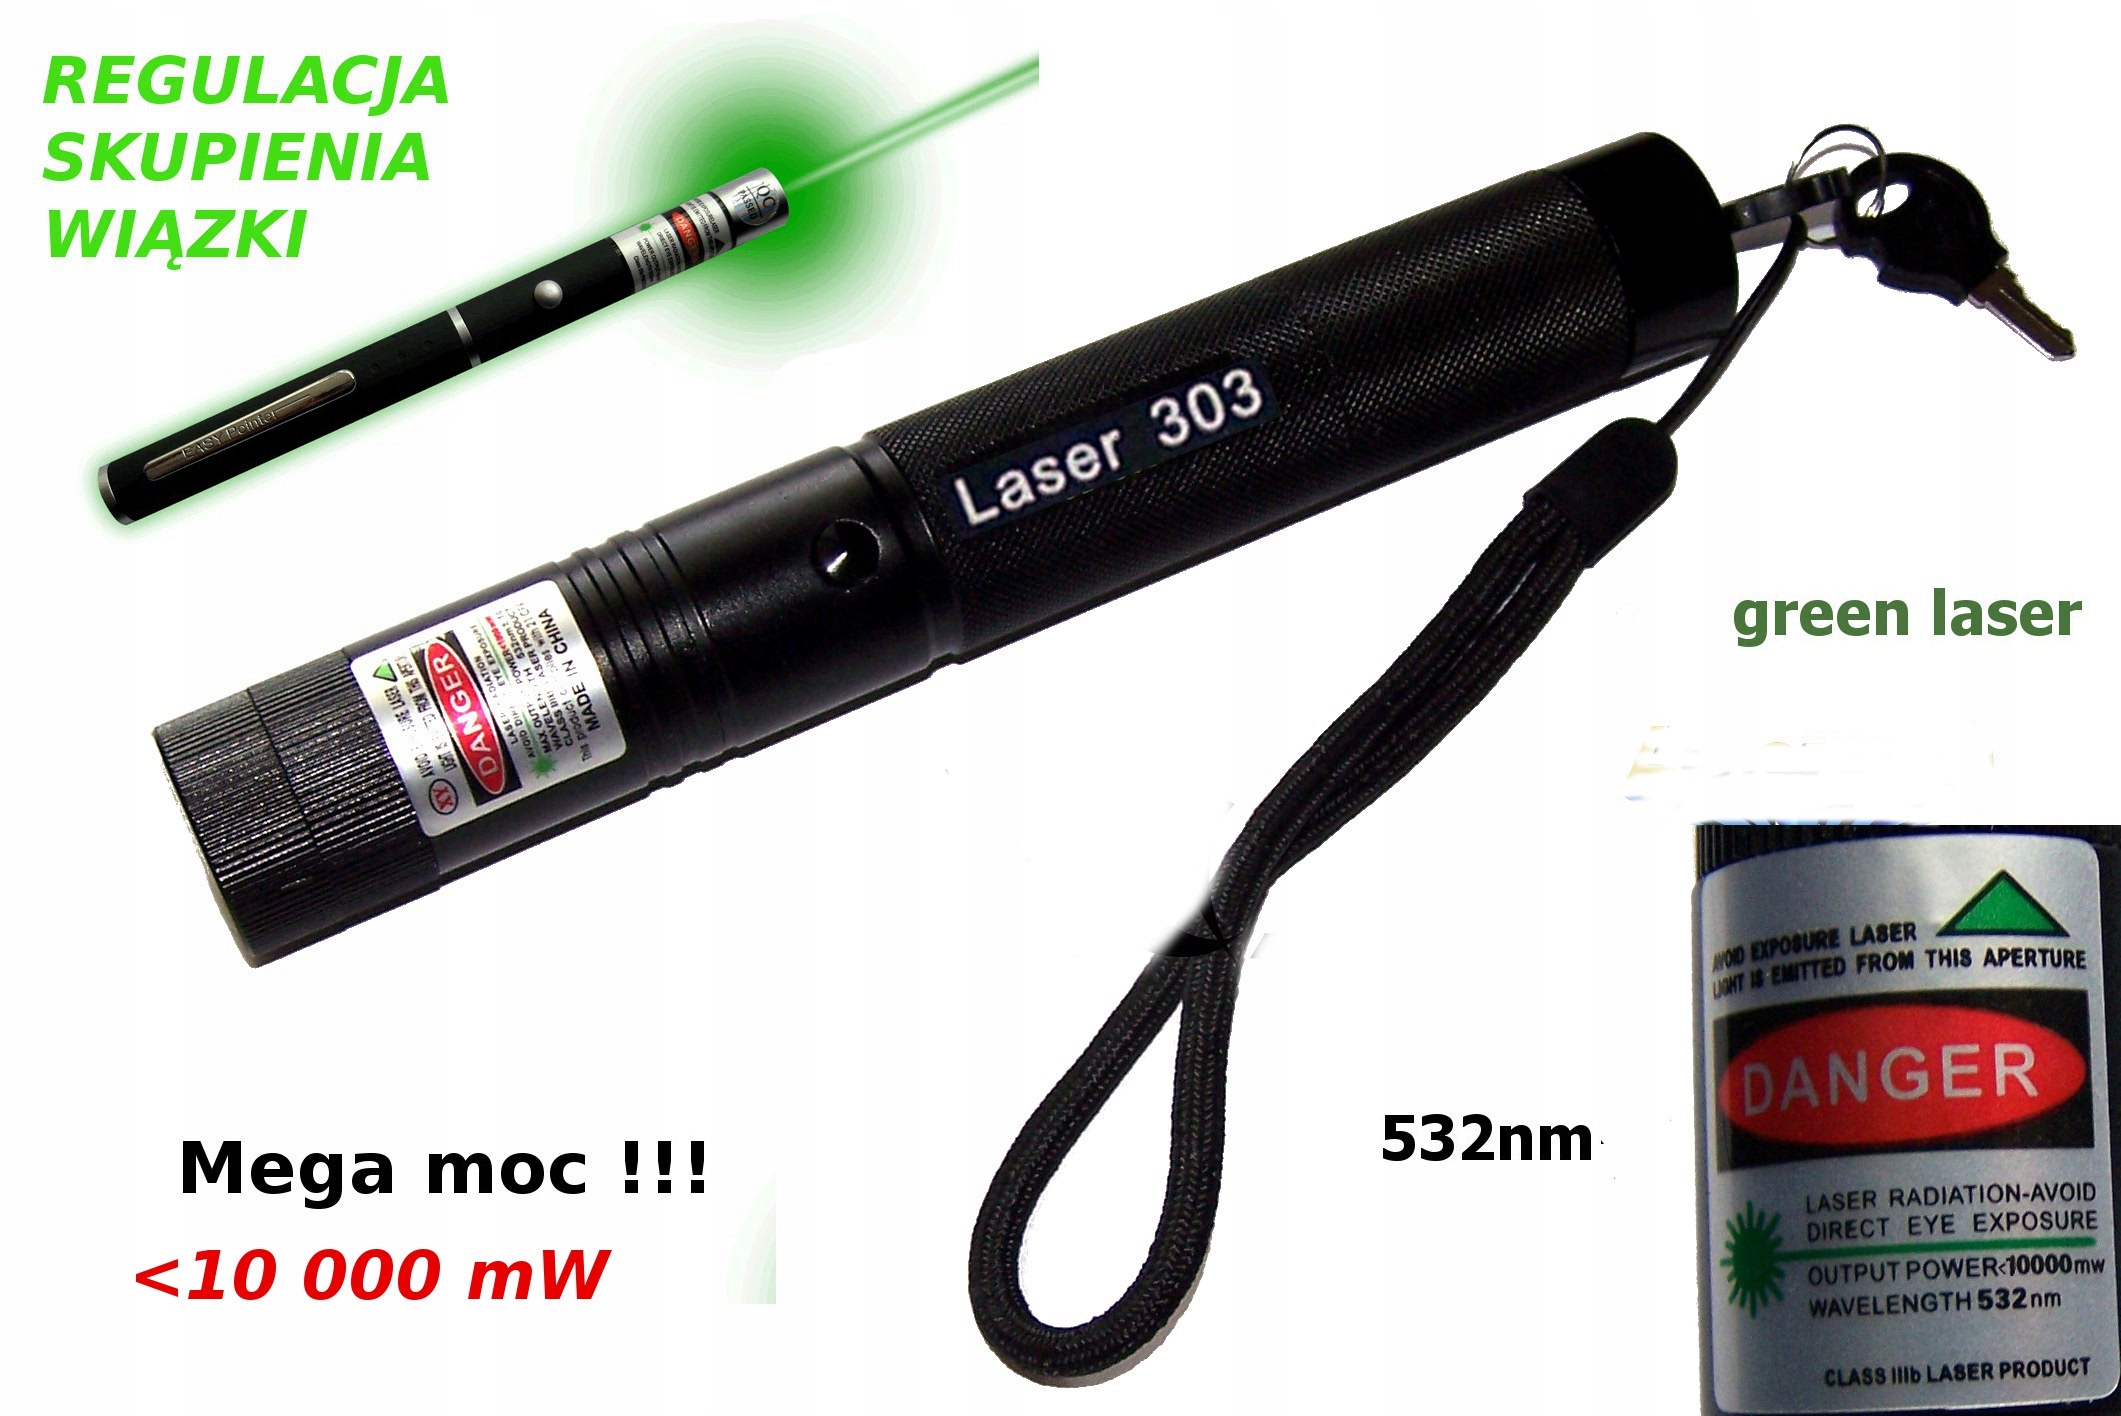 Батарейки для указок. Danger 532 NM лазер 10 батарейки. Батарейки для лазерной указки. Лазерная указка Danger wavelength. Зеленая лазерная указка батарея.